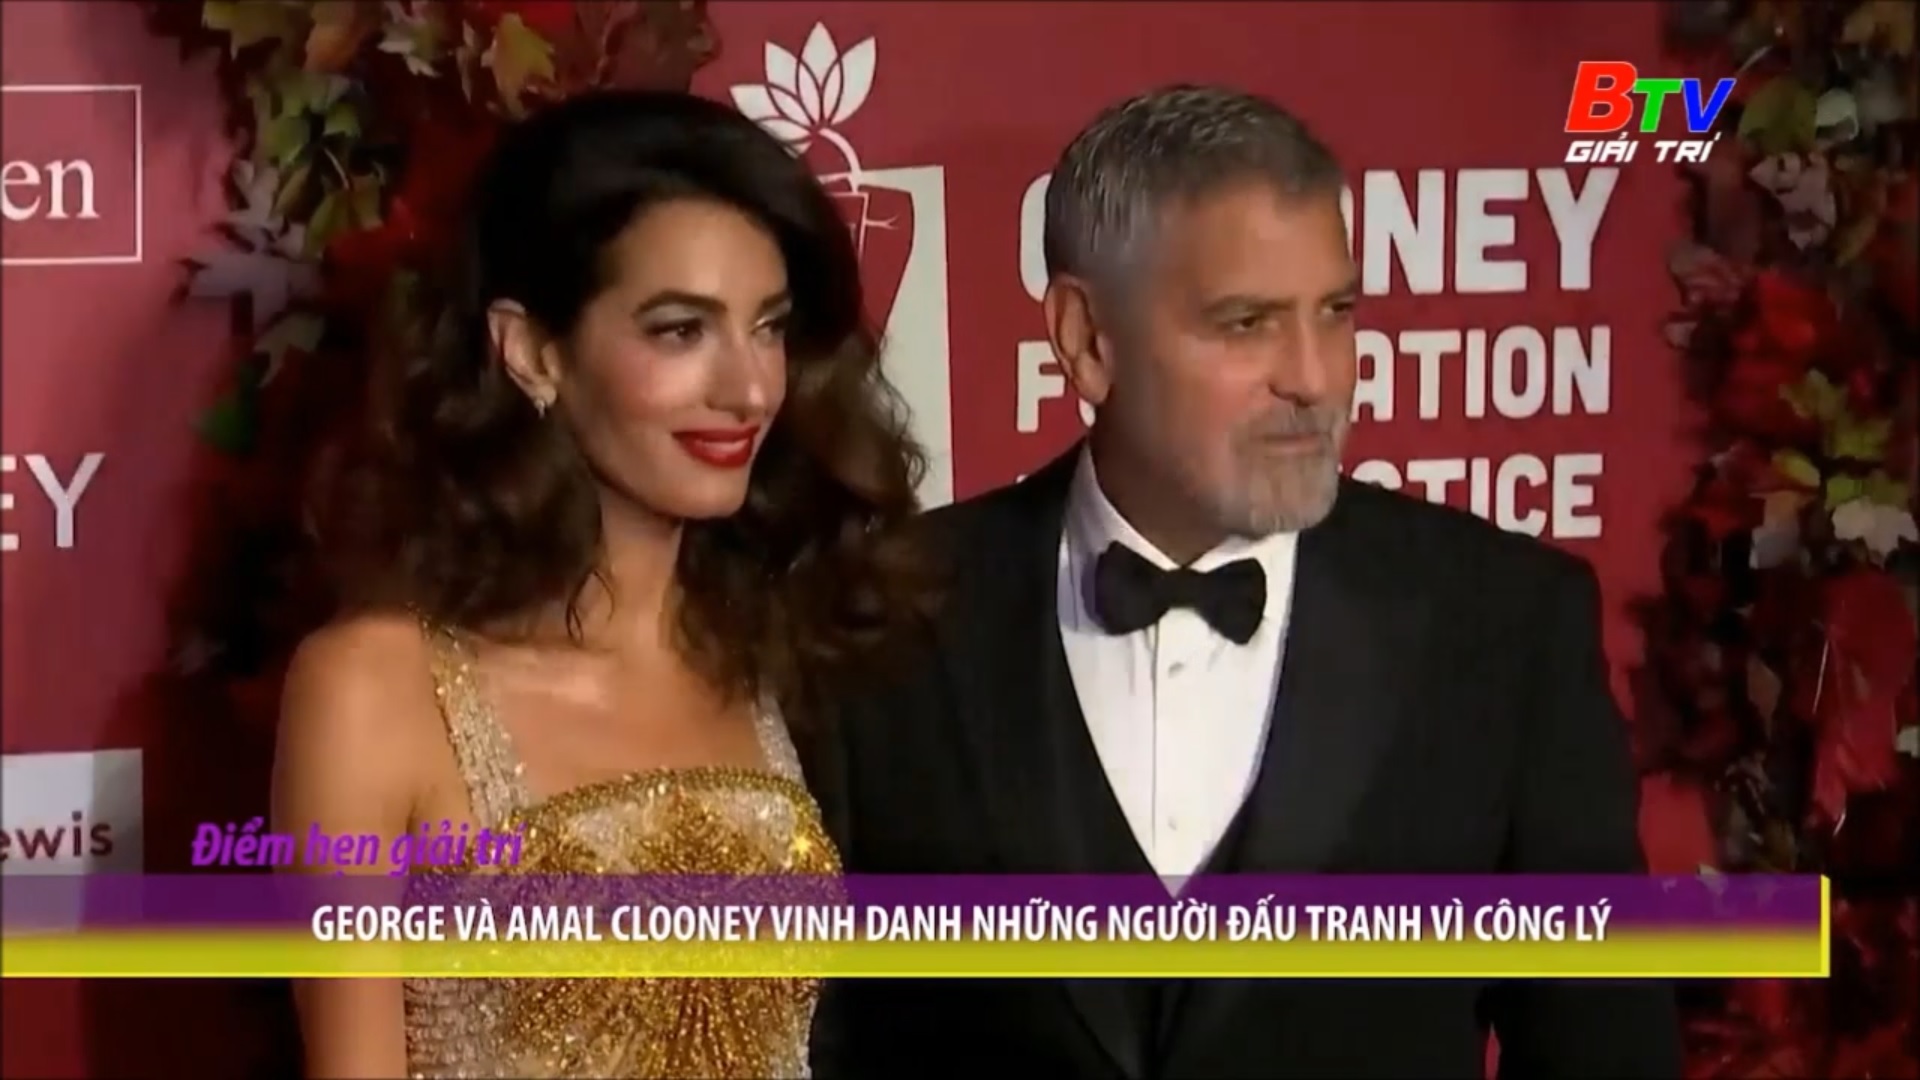 George và Amal Clooney vinh danh những người đấu tranh vì công lý